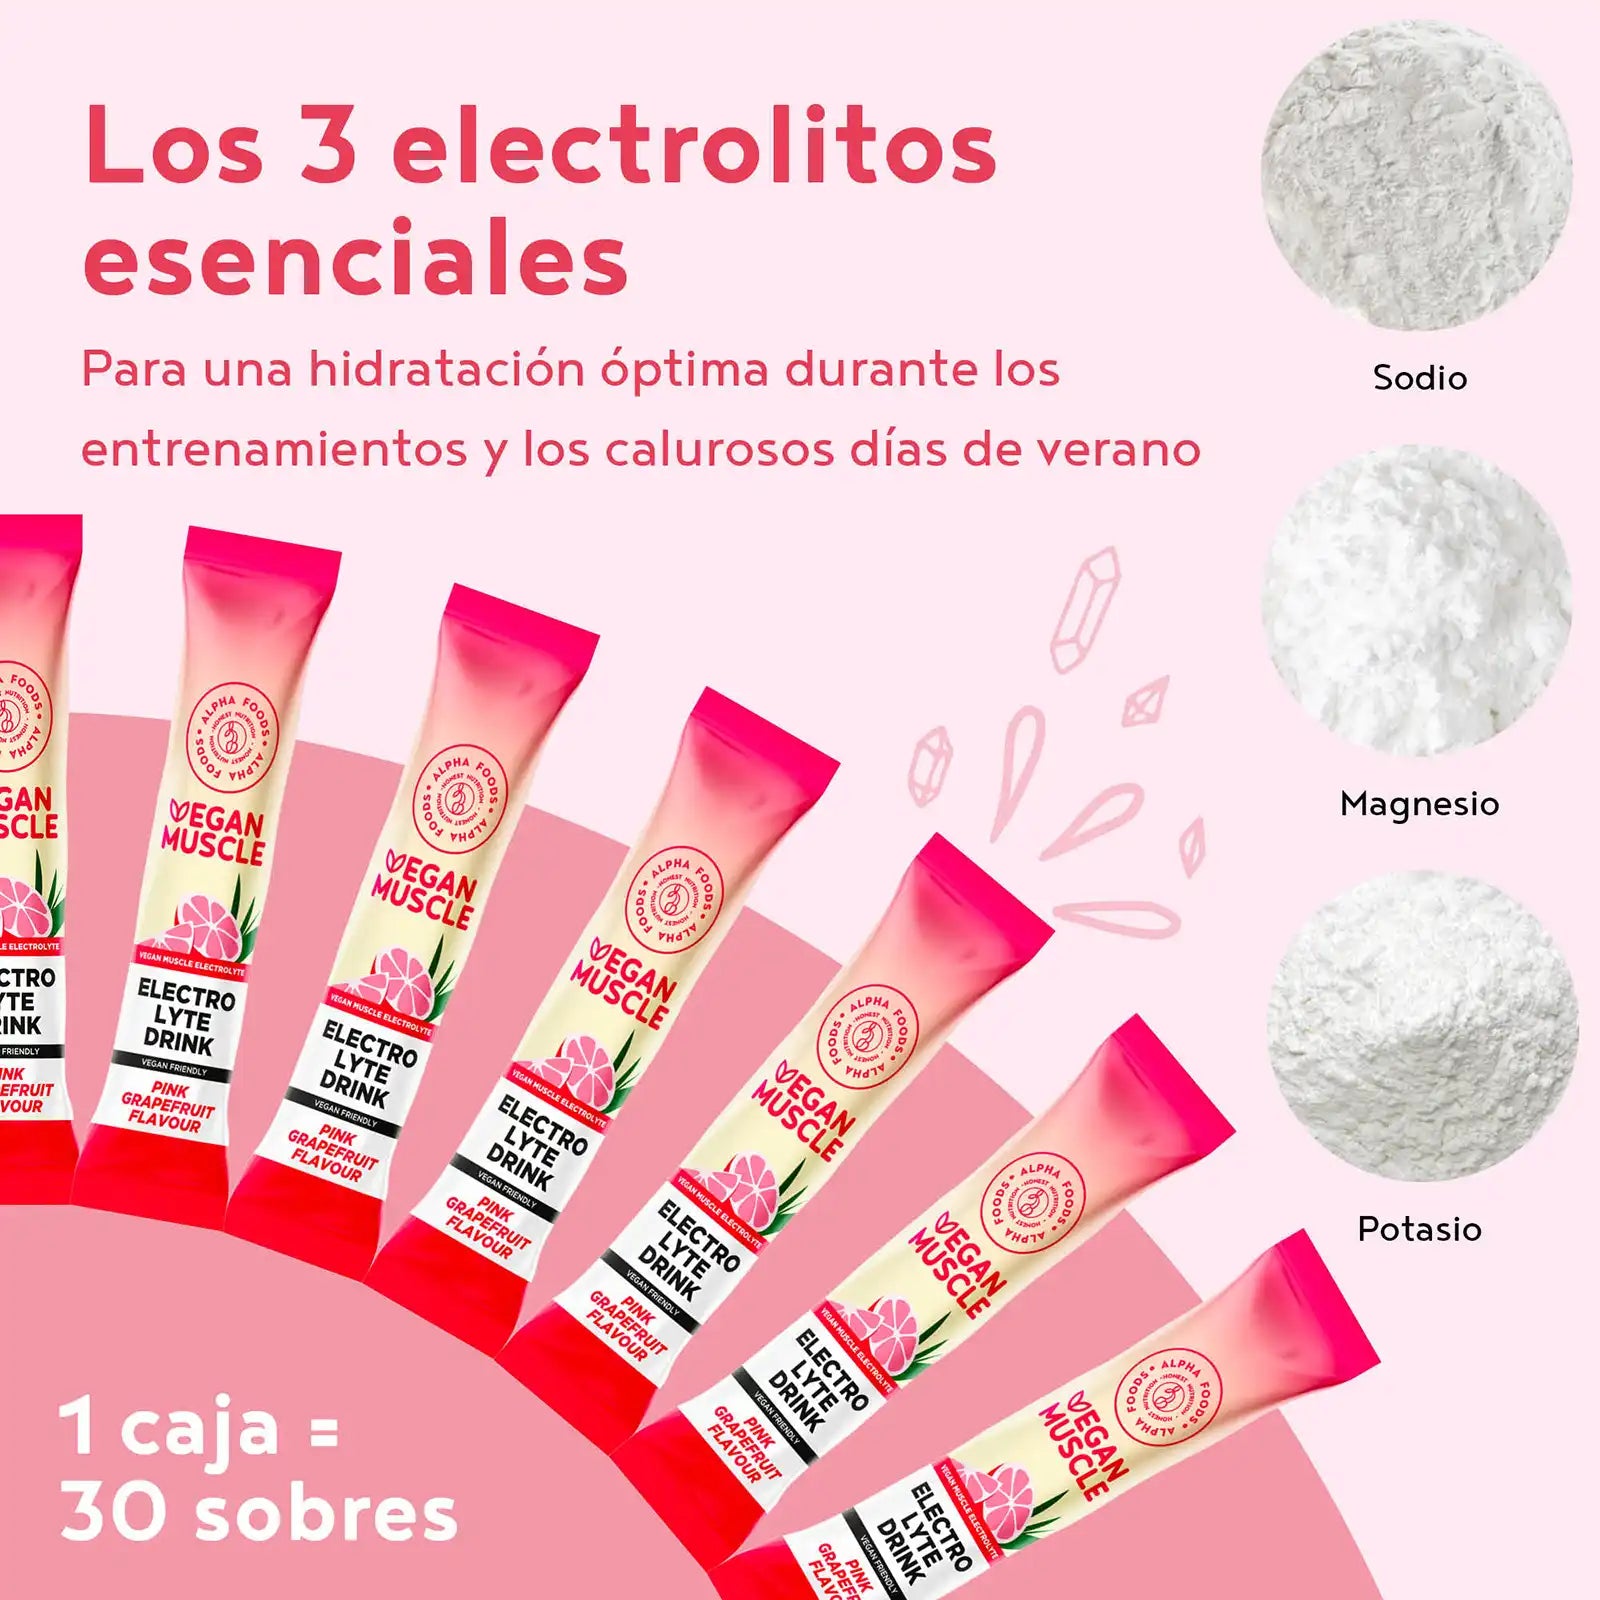 A+ One - Electrolitos - Pomelo rosa